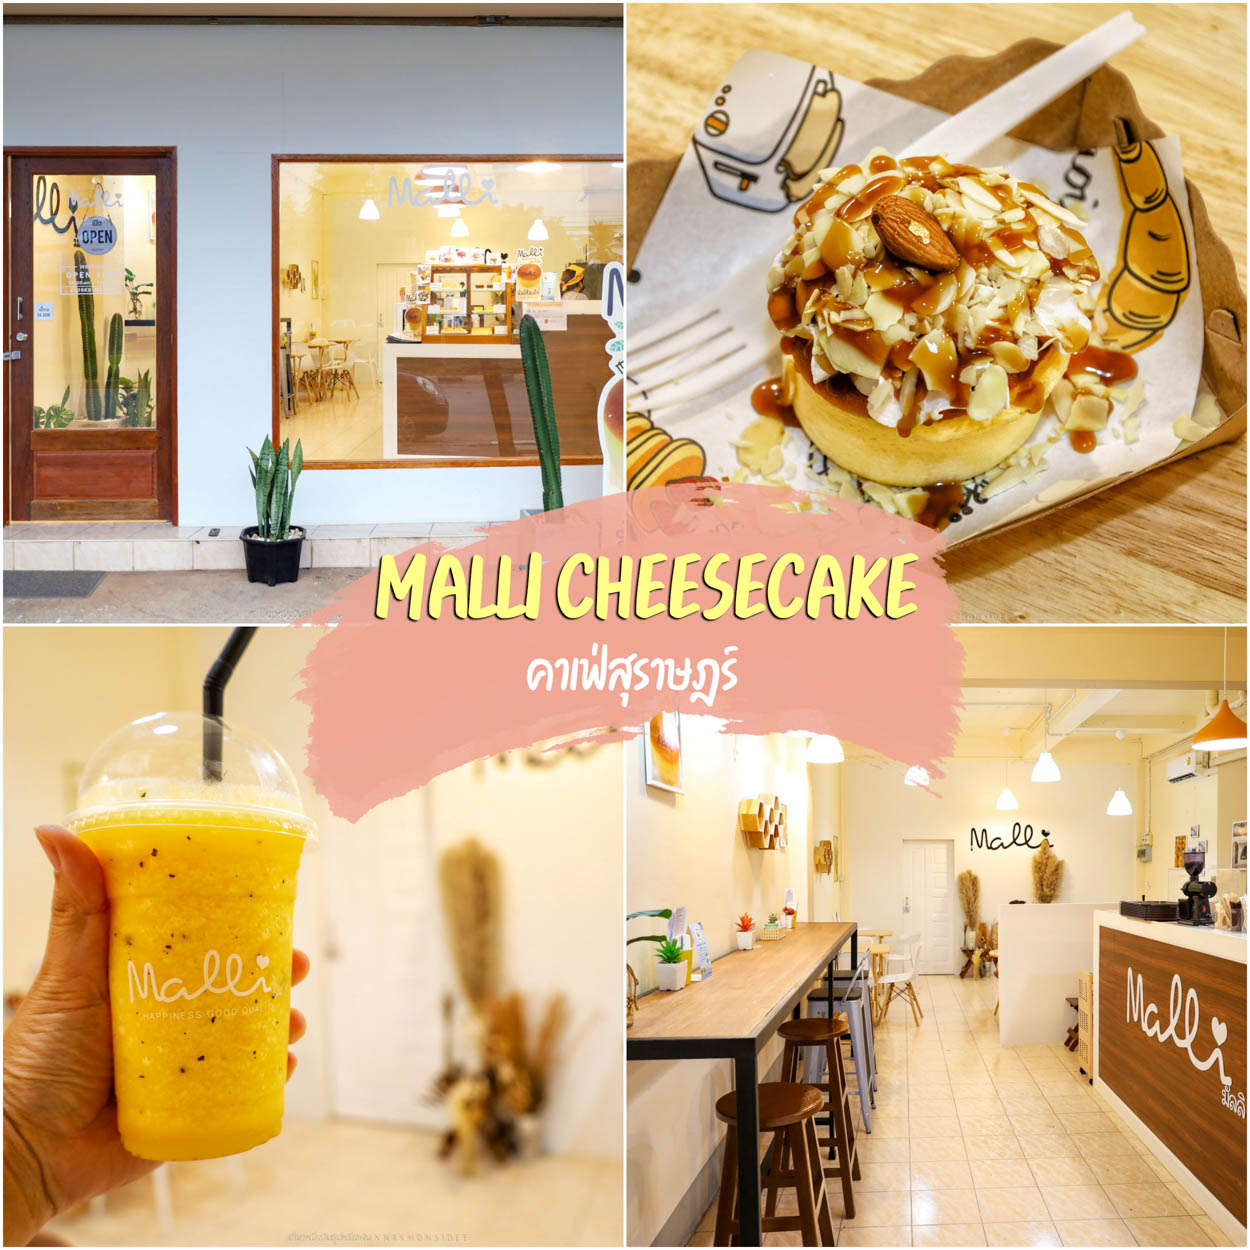 Malli Cheesecake สุราษฎร์ธานี มัลลิชีสเค้ก ชีสเค้กคนไทย รสชาติญี่ปุ่นจากโอซาก้า